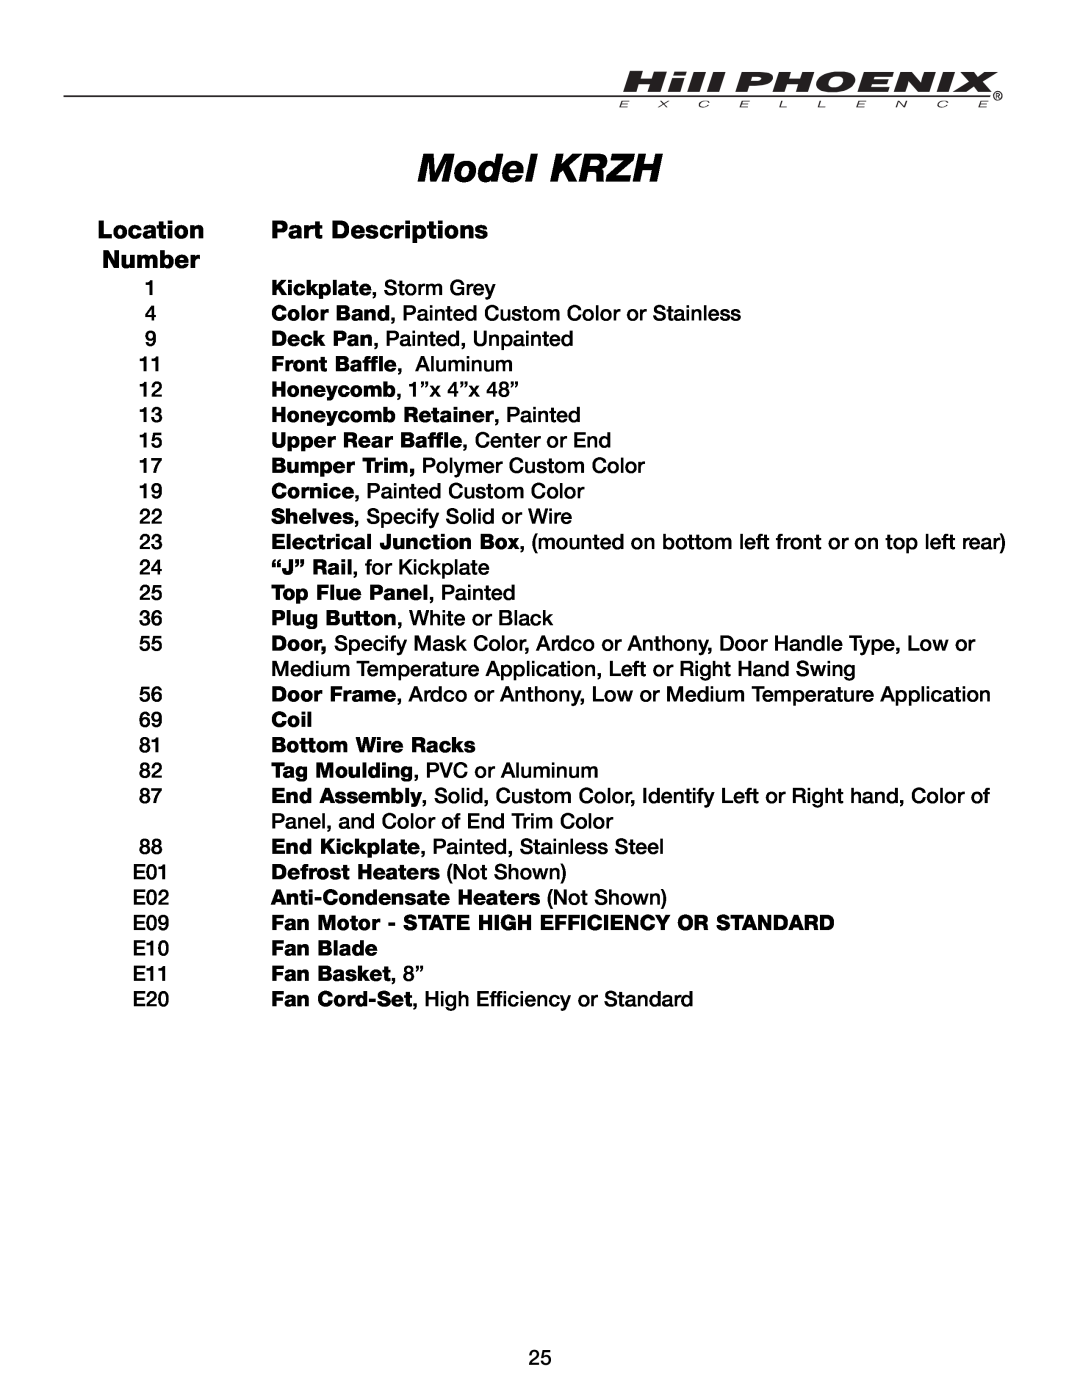 Hill Phoenix manual Model KRZH, Part Descriptions, Number, Location, Front Baffle, Aluminum, Top Flue Panel, Painted 